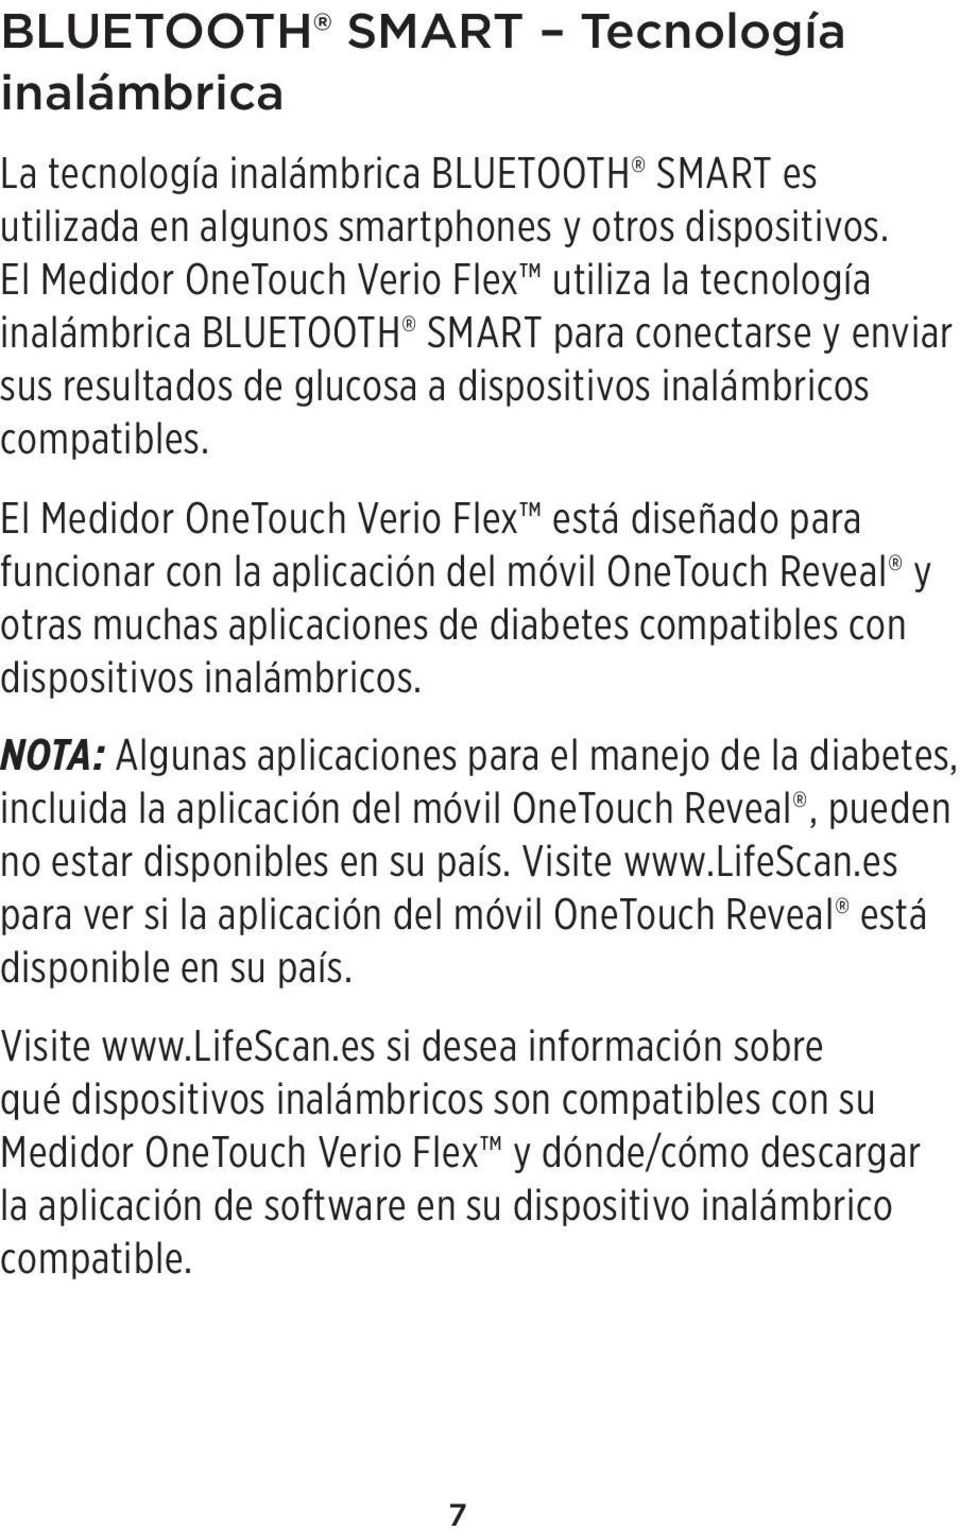 El Medidor OneTouch Verio Flex está diseñado para funcionar con la aplicación del móvil OneTouch Reveal y otras muchas aplicaciones de diabetes compatibles con dispositivos inalámbricos.